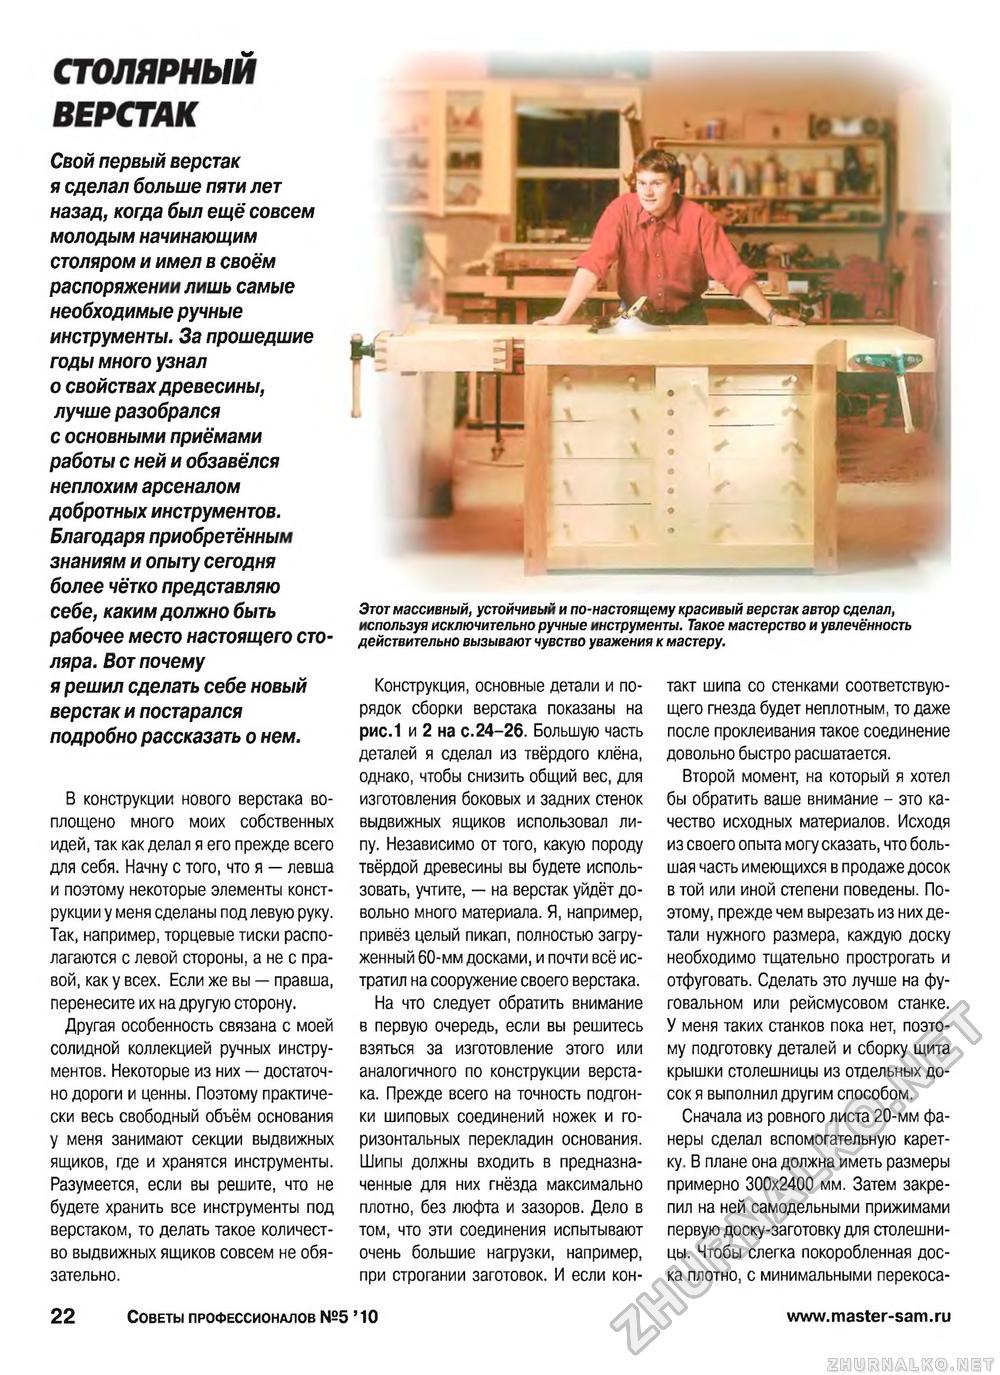 Советы профессионалов 2010-05, страница 23